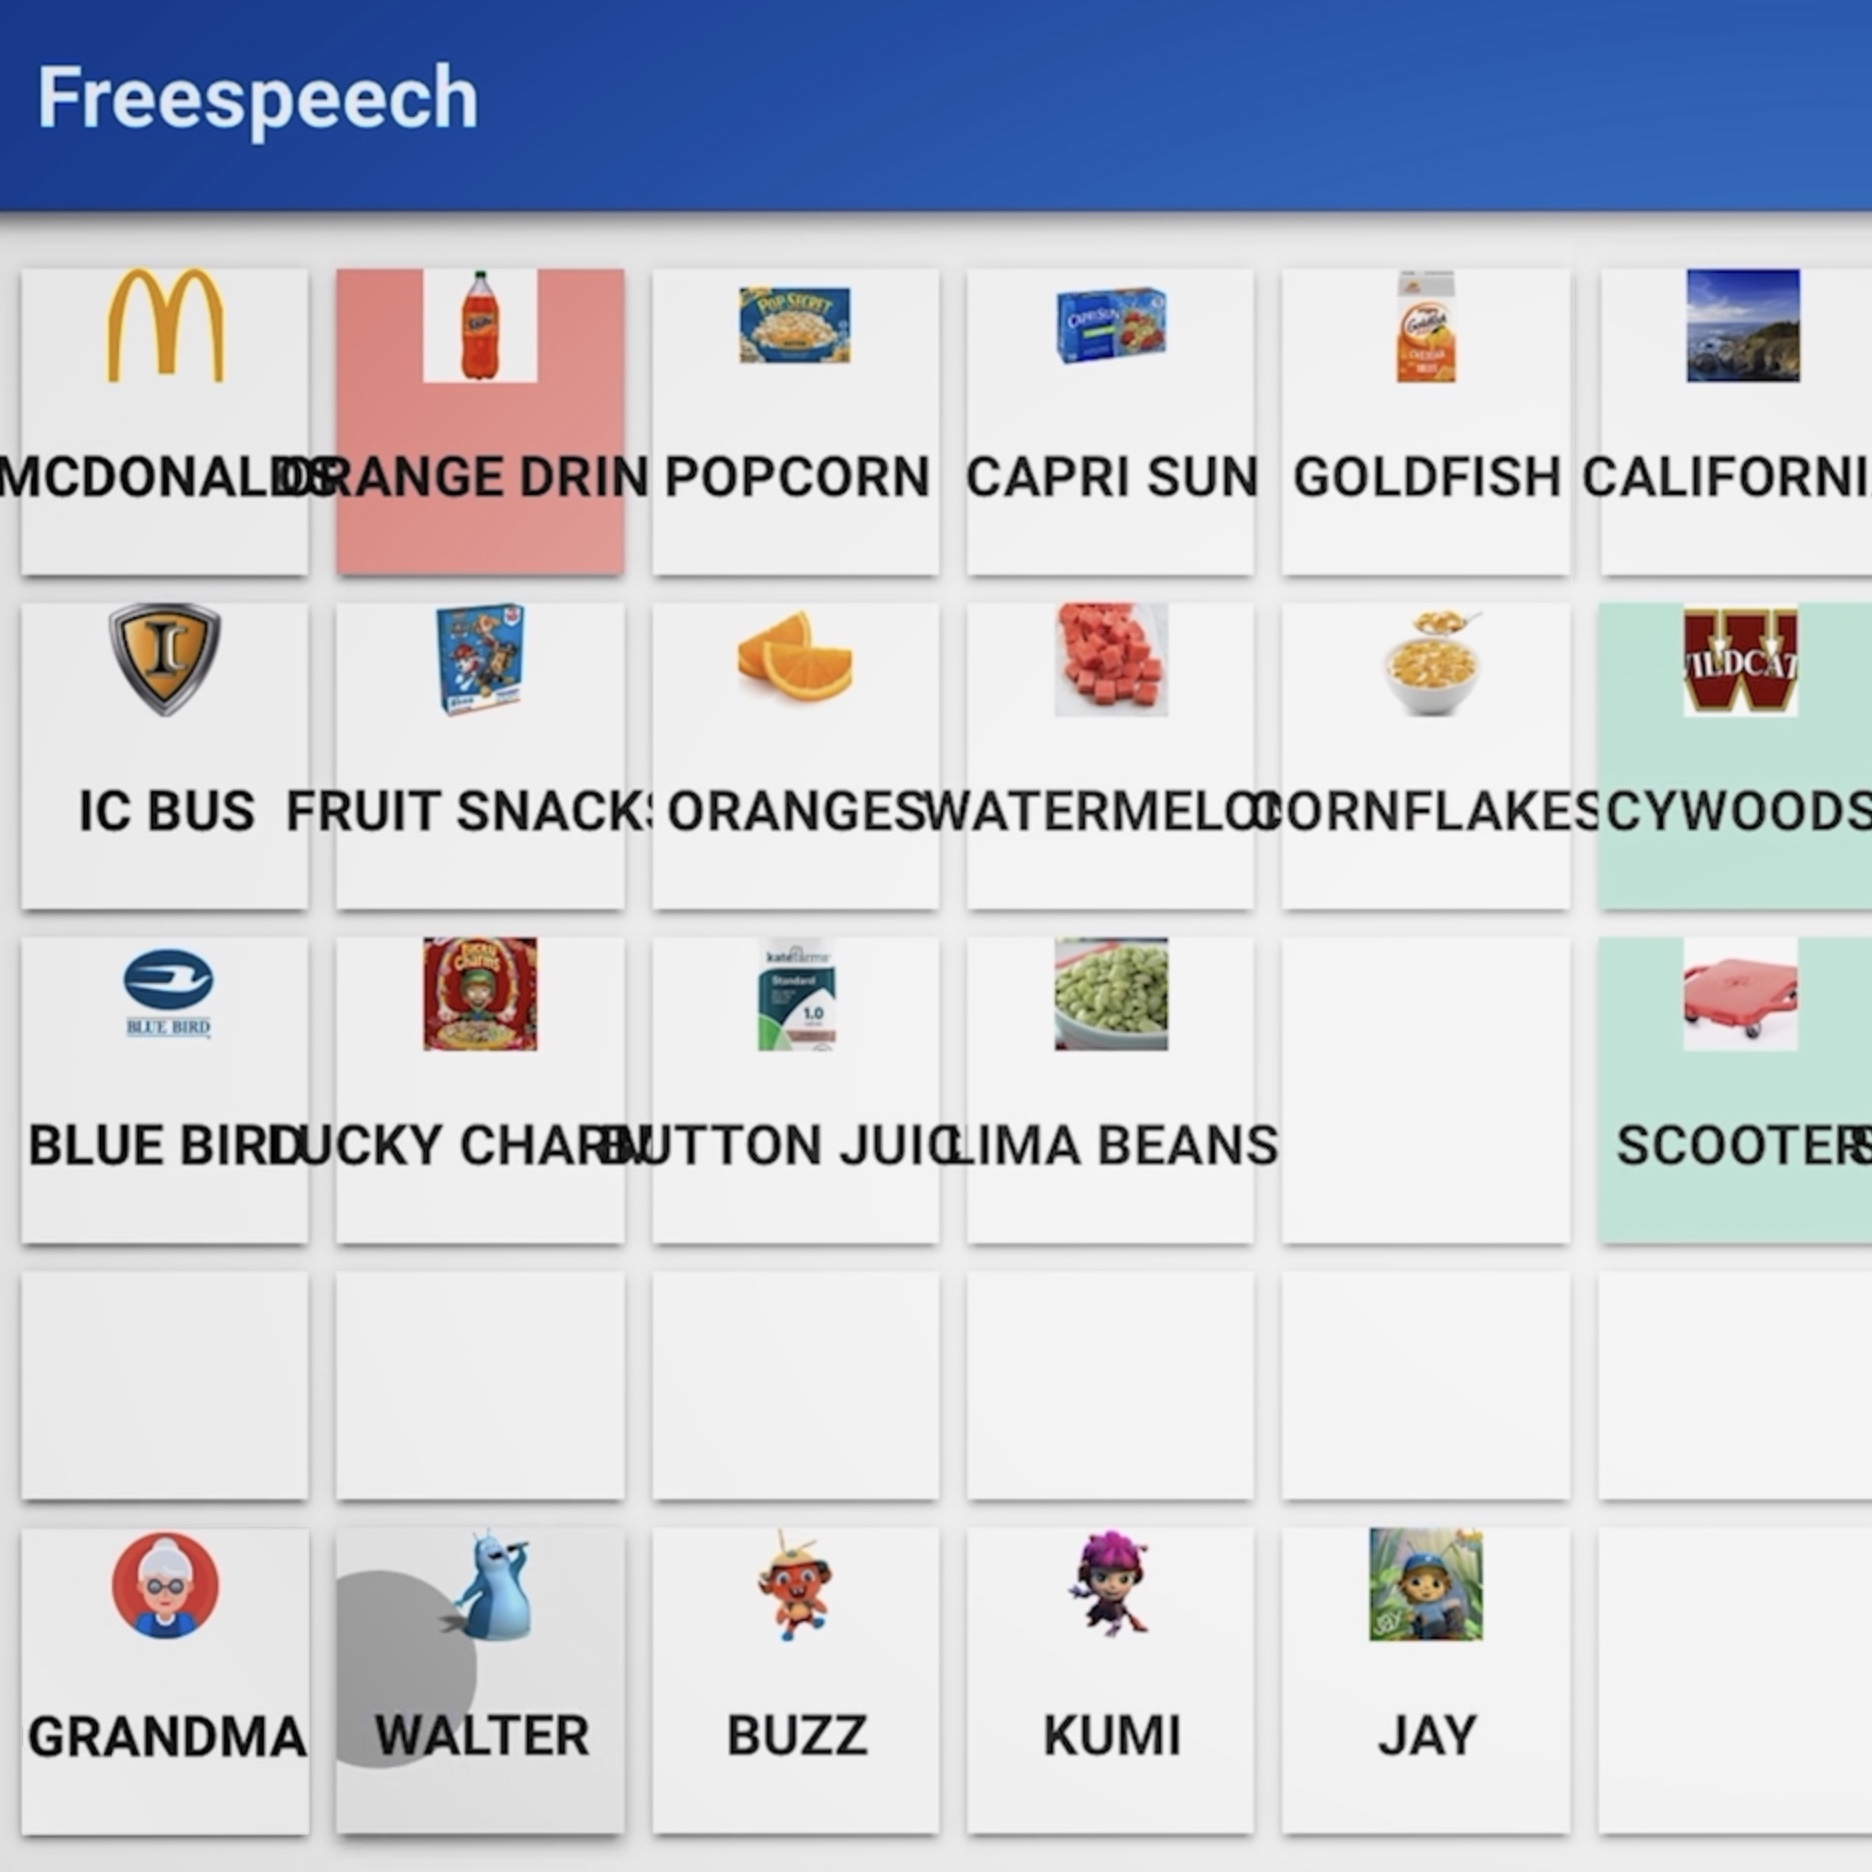 Mcdonald's free speech - screenshot.